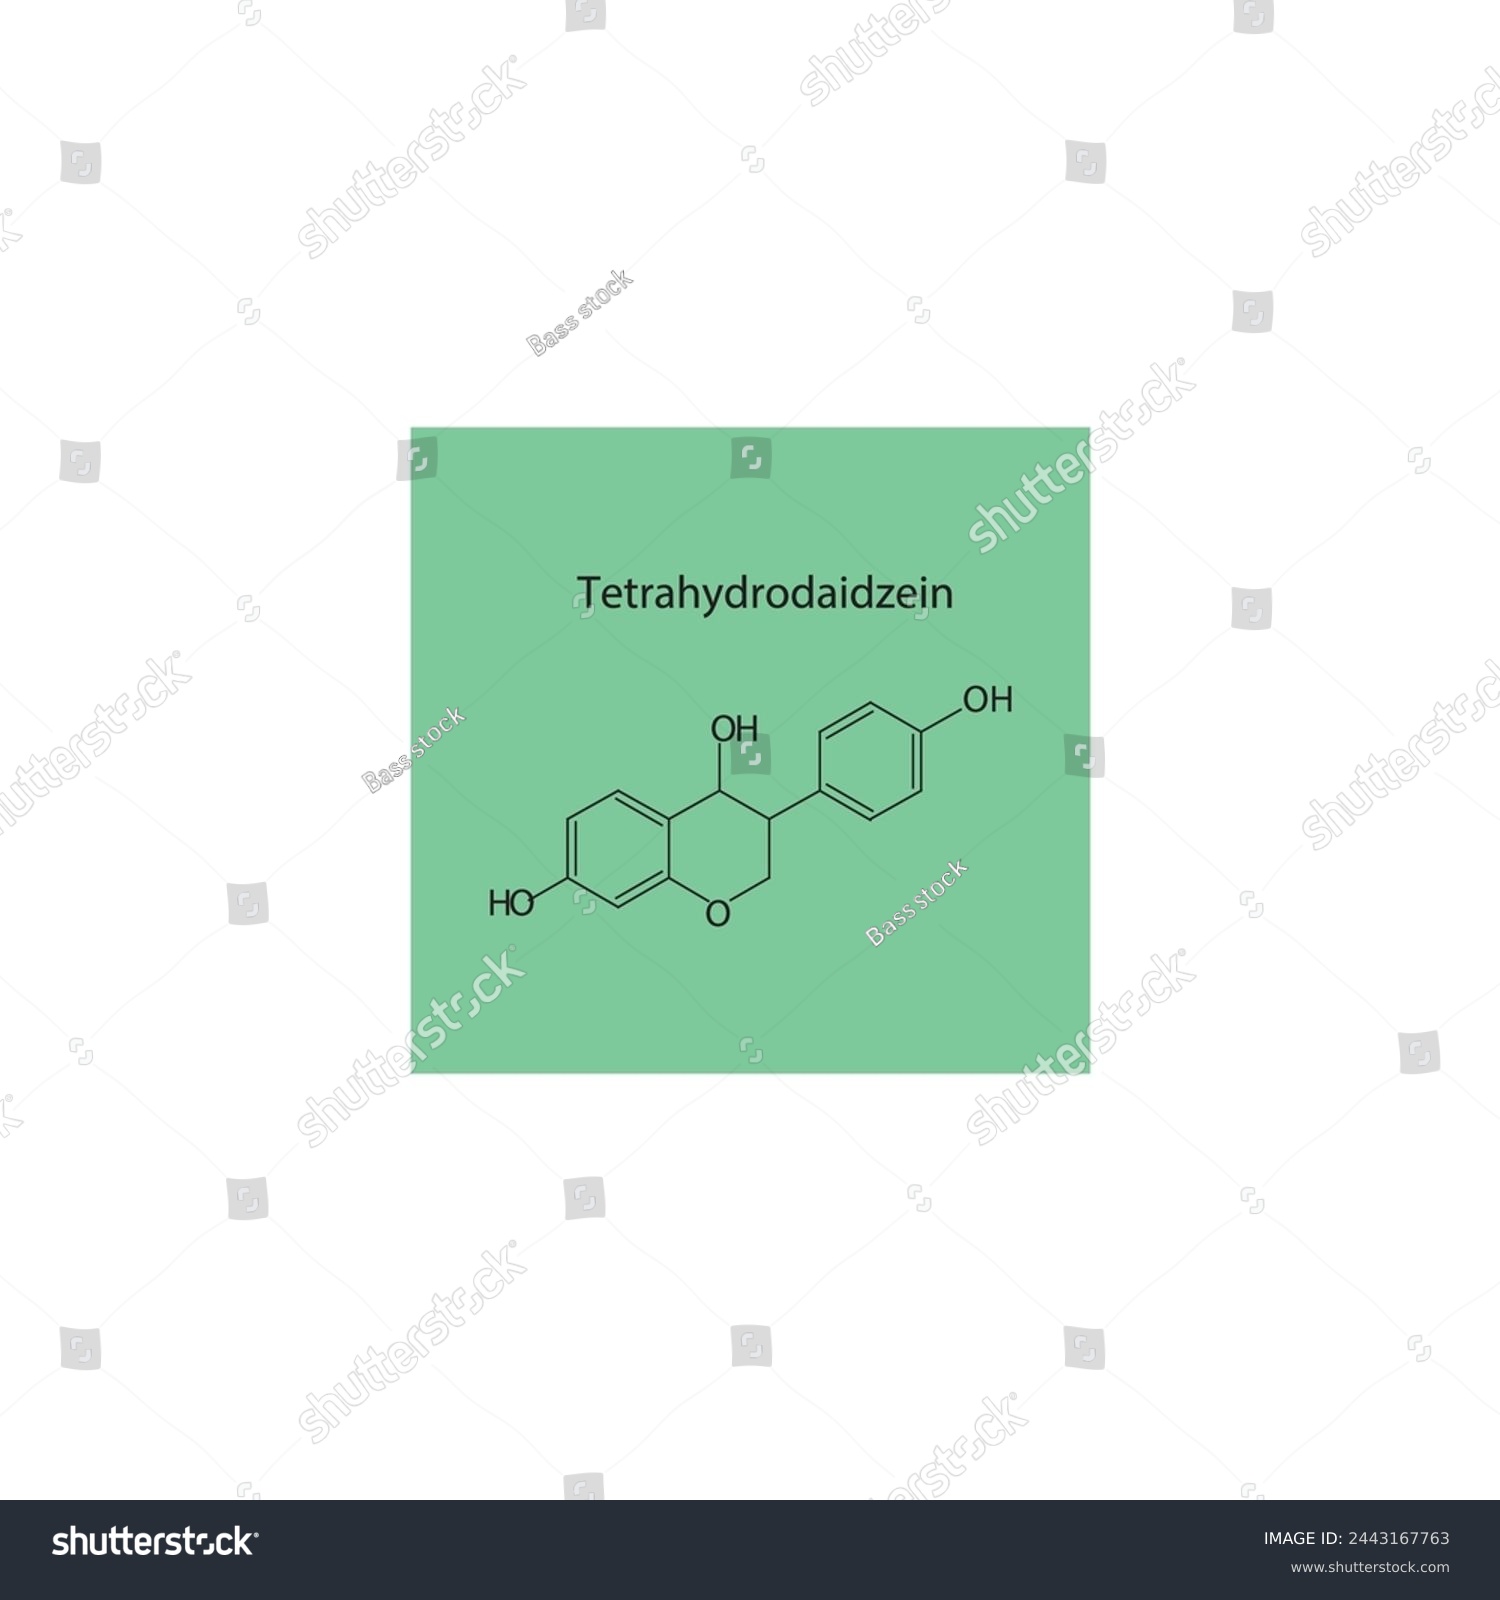 SVG of Tetrahydrodaidzein skeletal structure diagram.Isoflavanone compound molecule scientific illustration on green background. svg